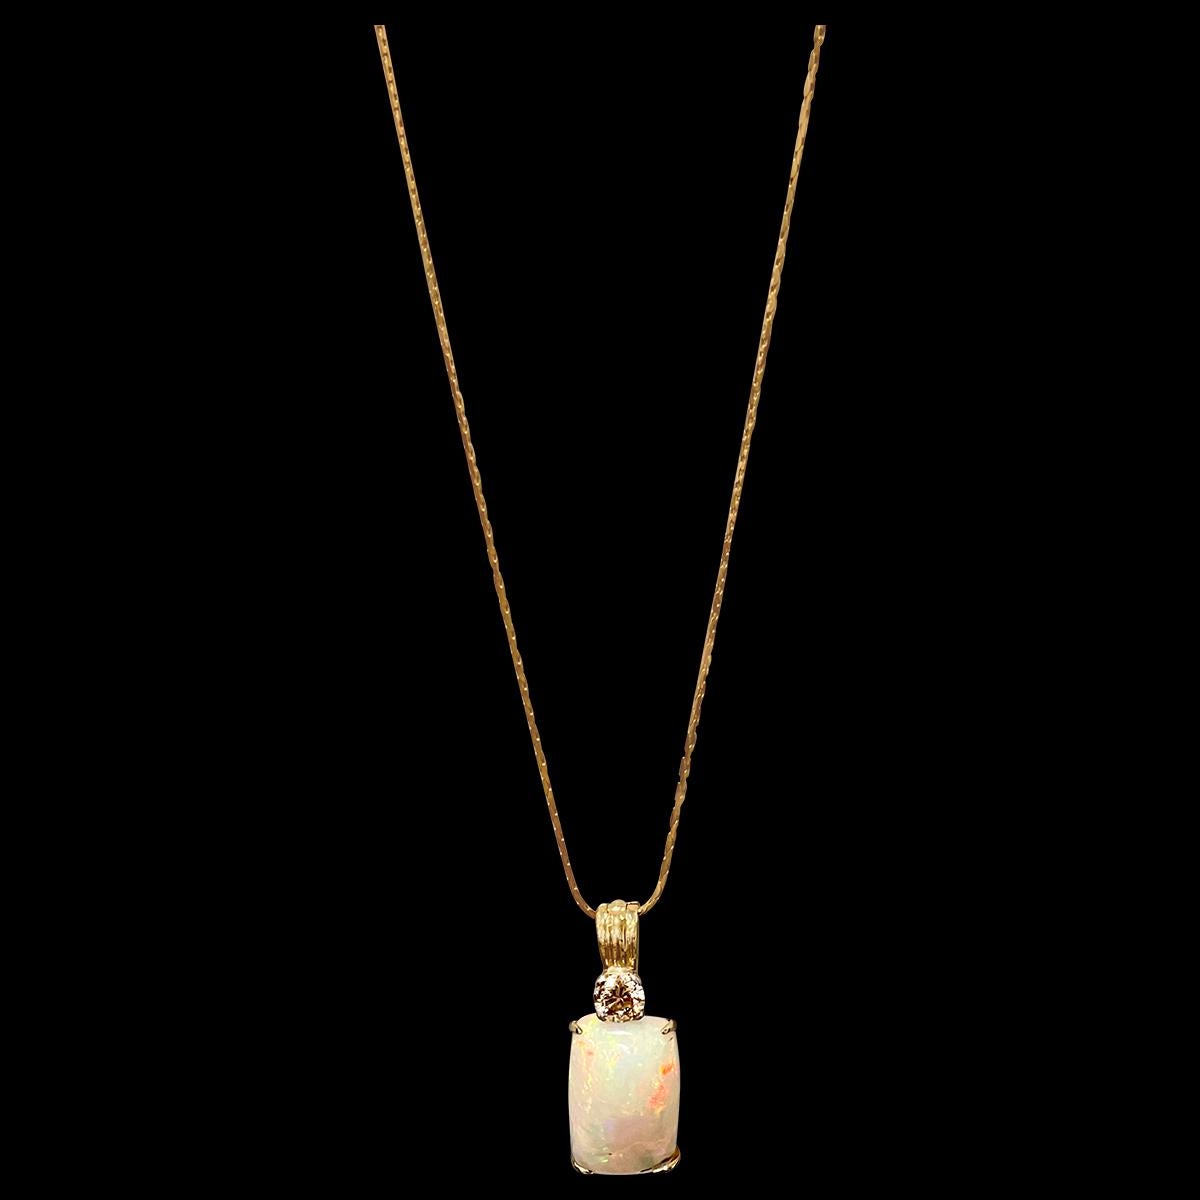 Cushion Cut 7 Ct Ethiopian Opal & Diamond Pendant / Necklace 14 Karat + 14 Kt Gold Chain For Sale